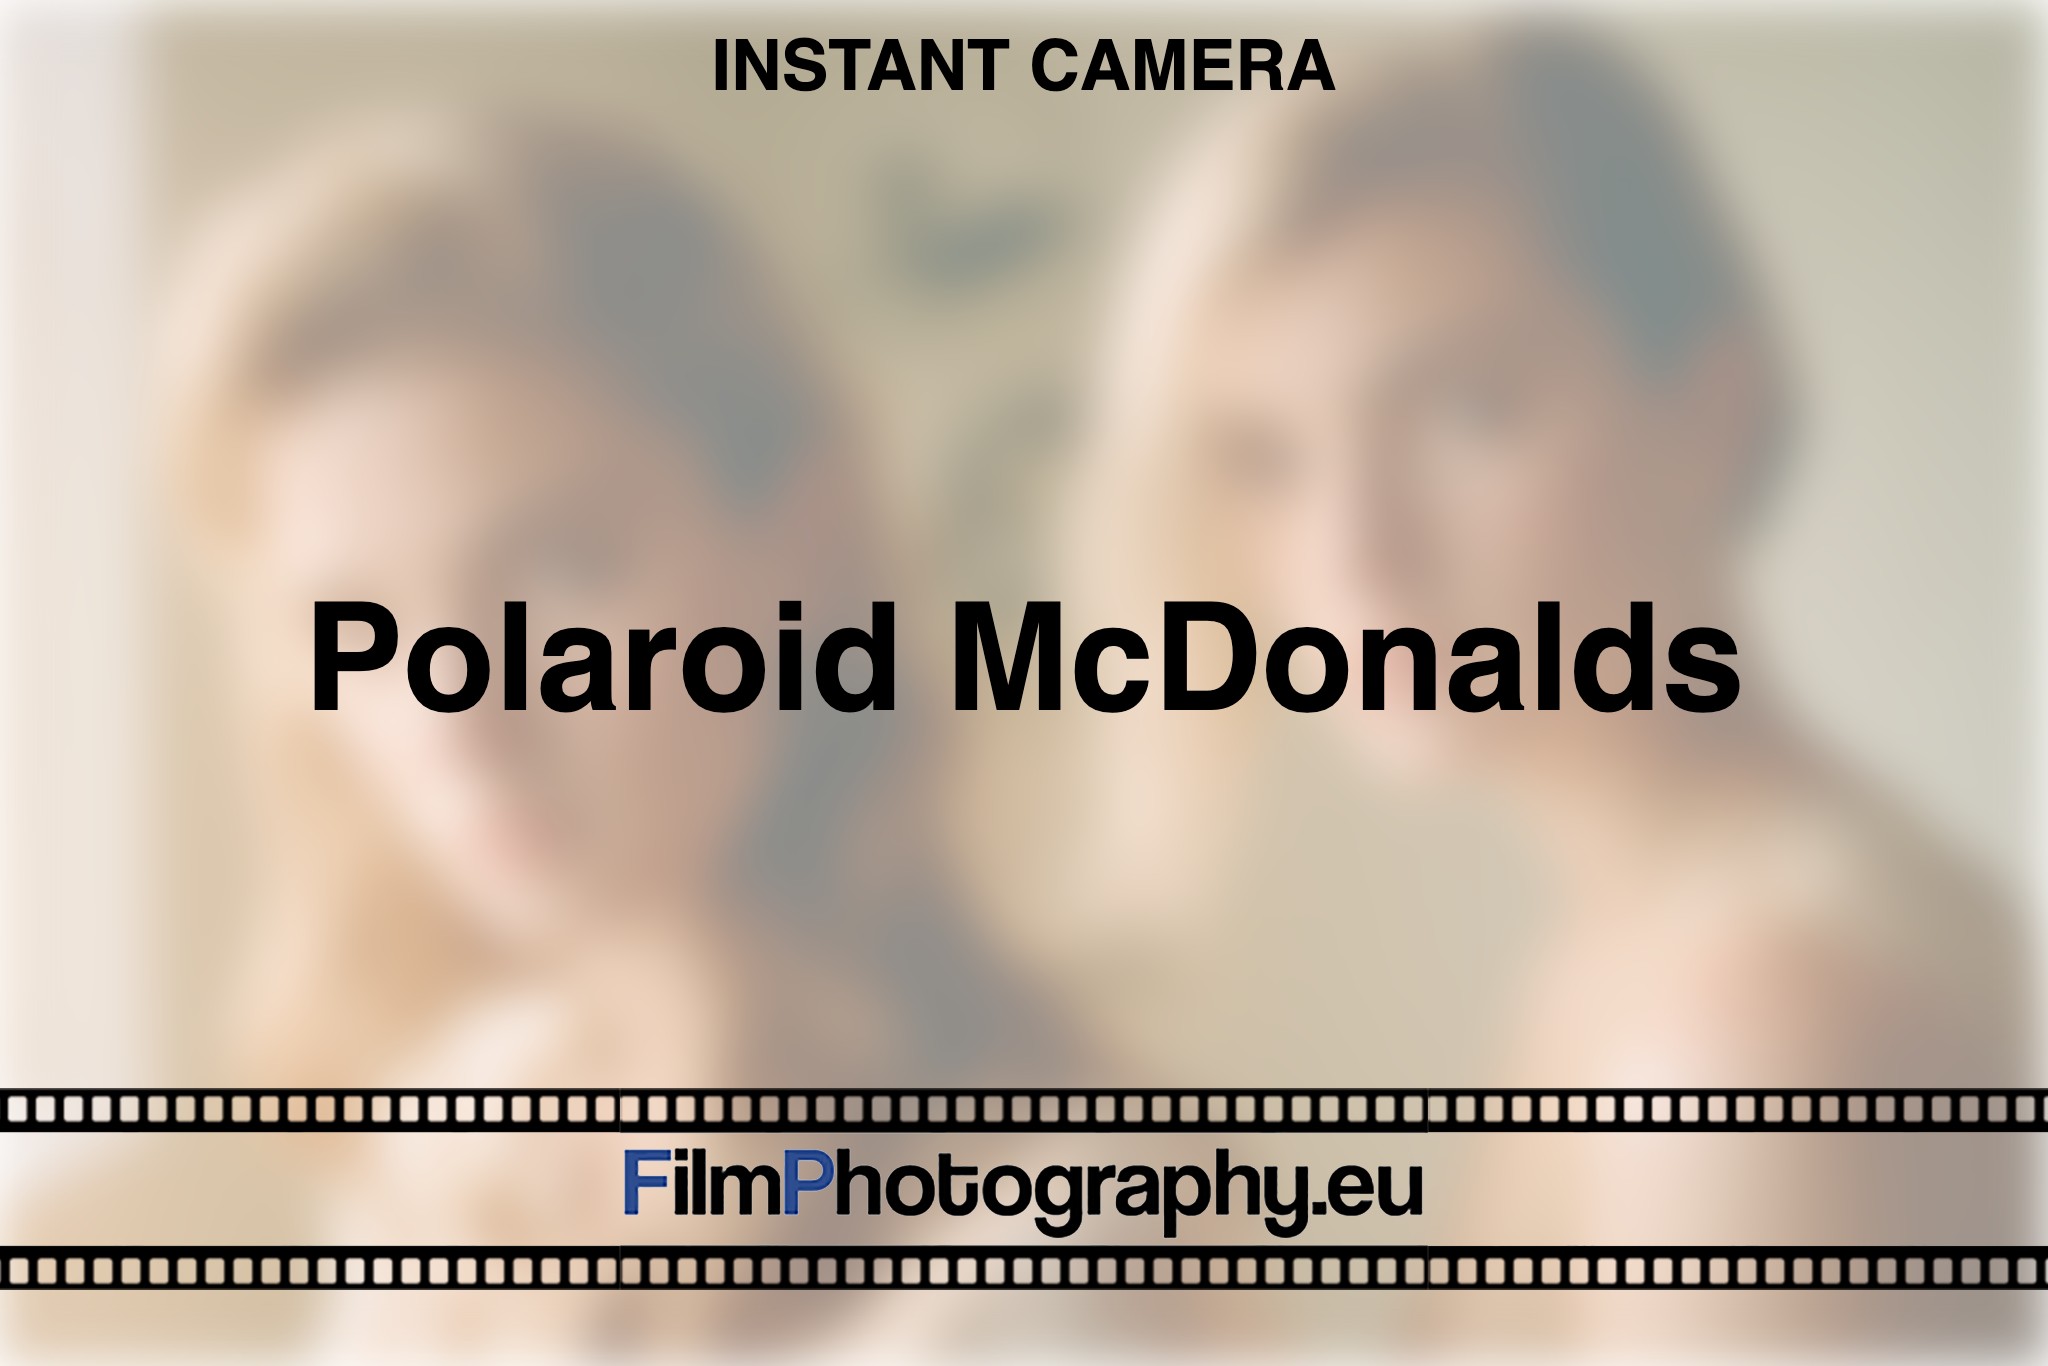 polaroid-mcdonalds-instant-camera-bnv